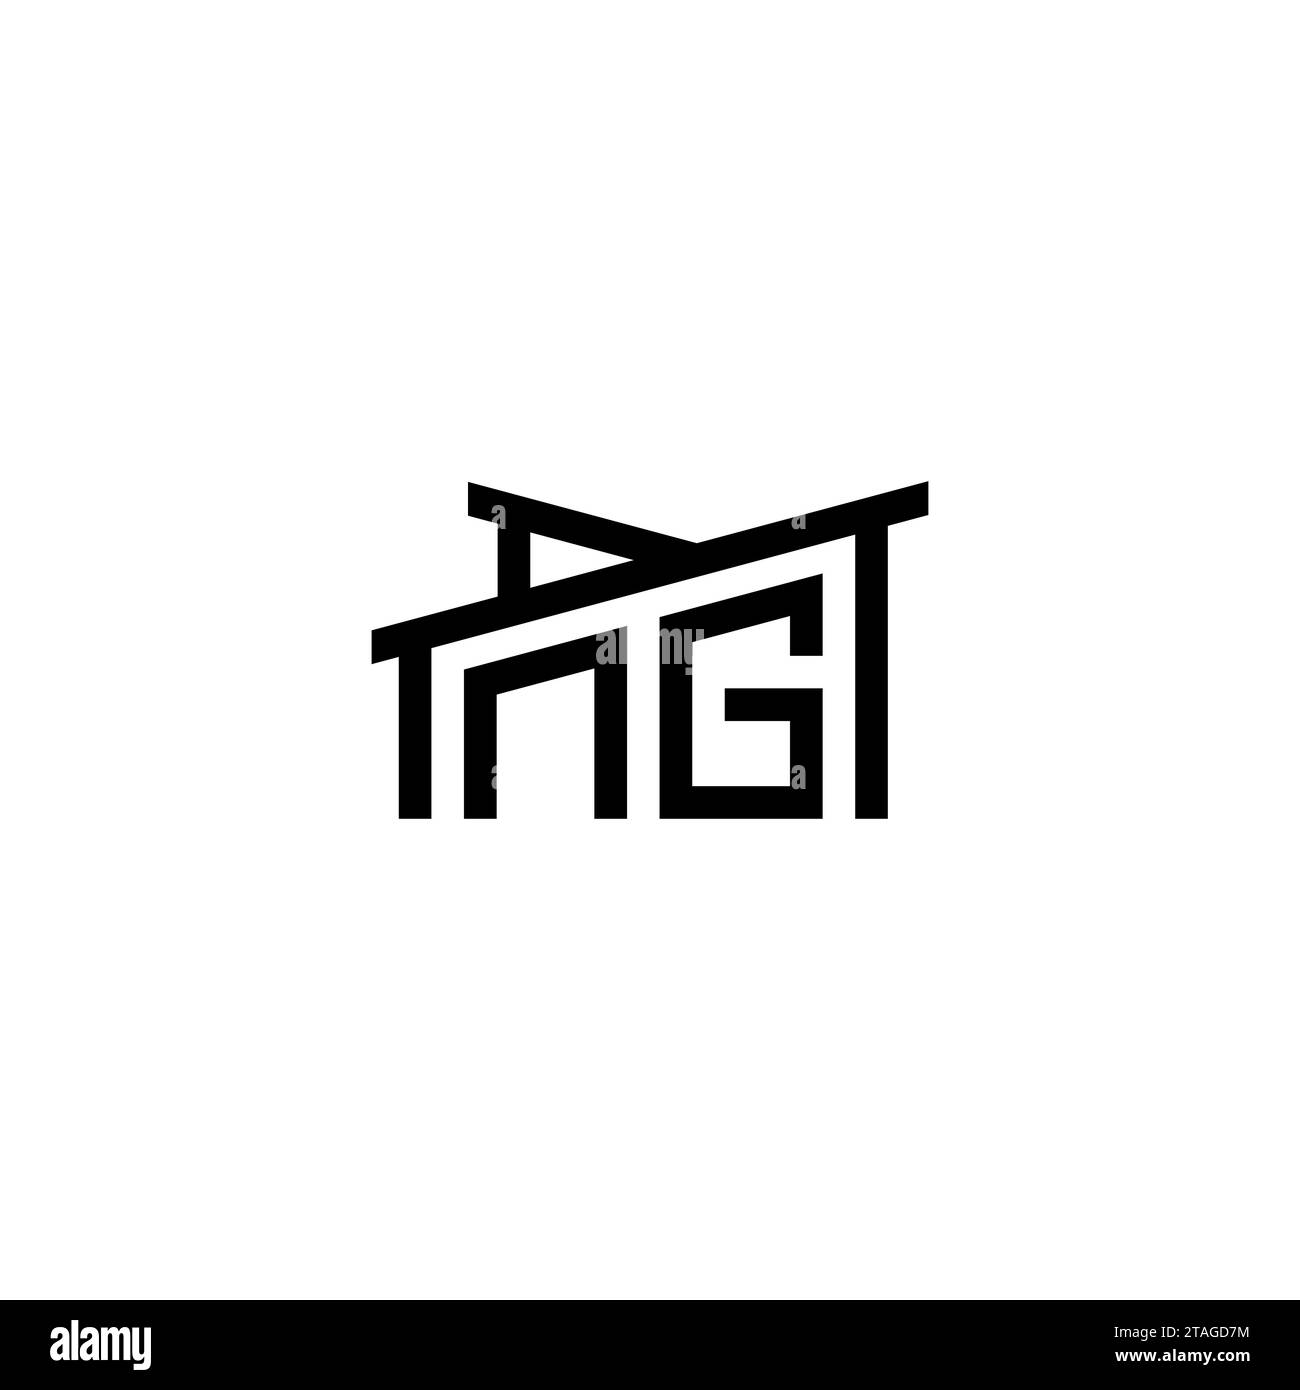 NG lettre initiale dans le concept de logo immobilier.eps NG lettre initiale dans le concept de logo immobilier Illustration de Vecteur